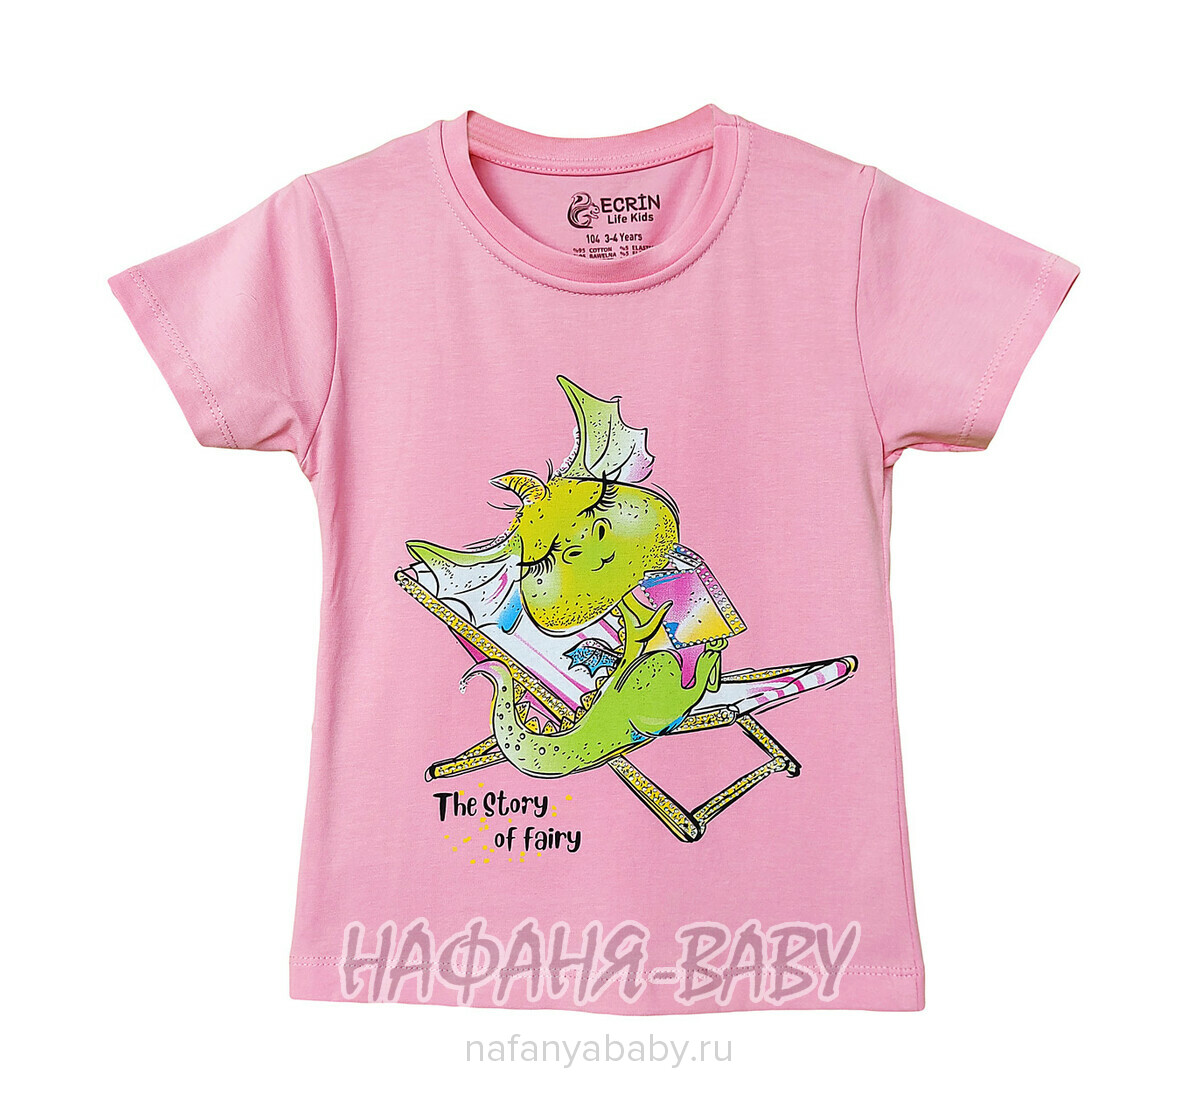 Детская футболка ECRIN арт. 5226, 4-8 лет, цвет розовый, оптом Турция